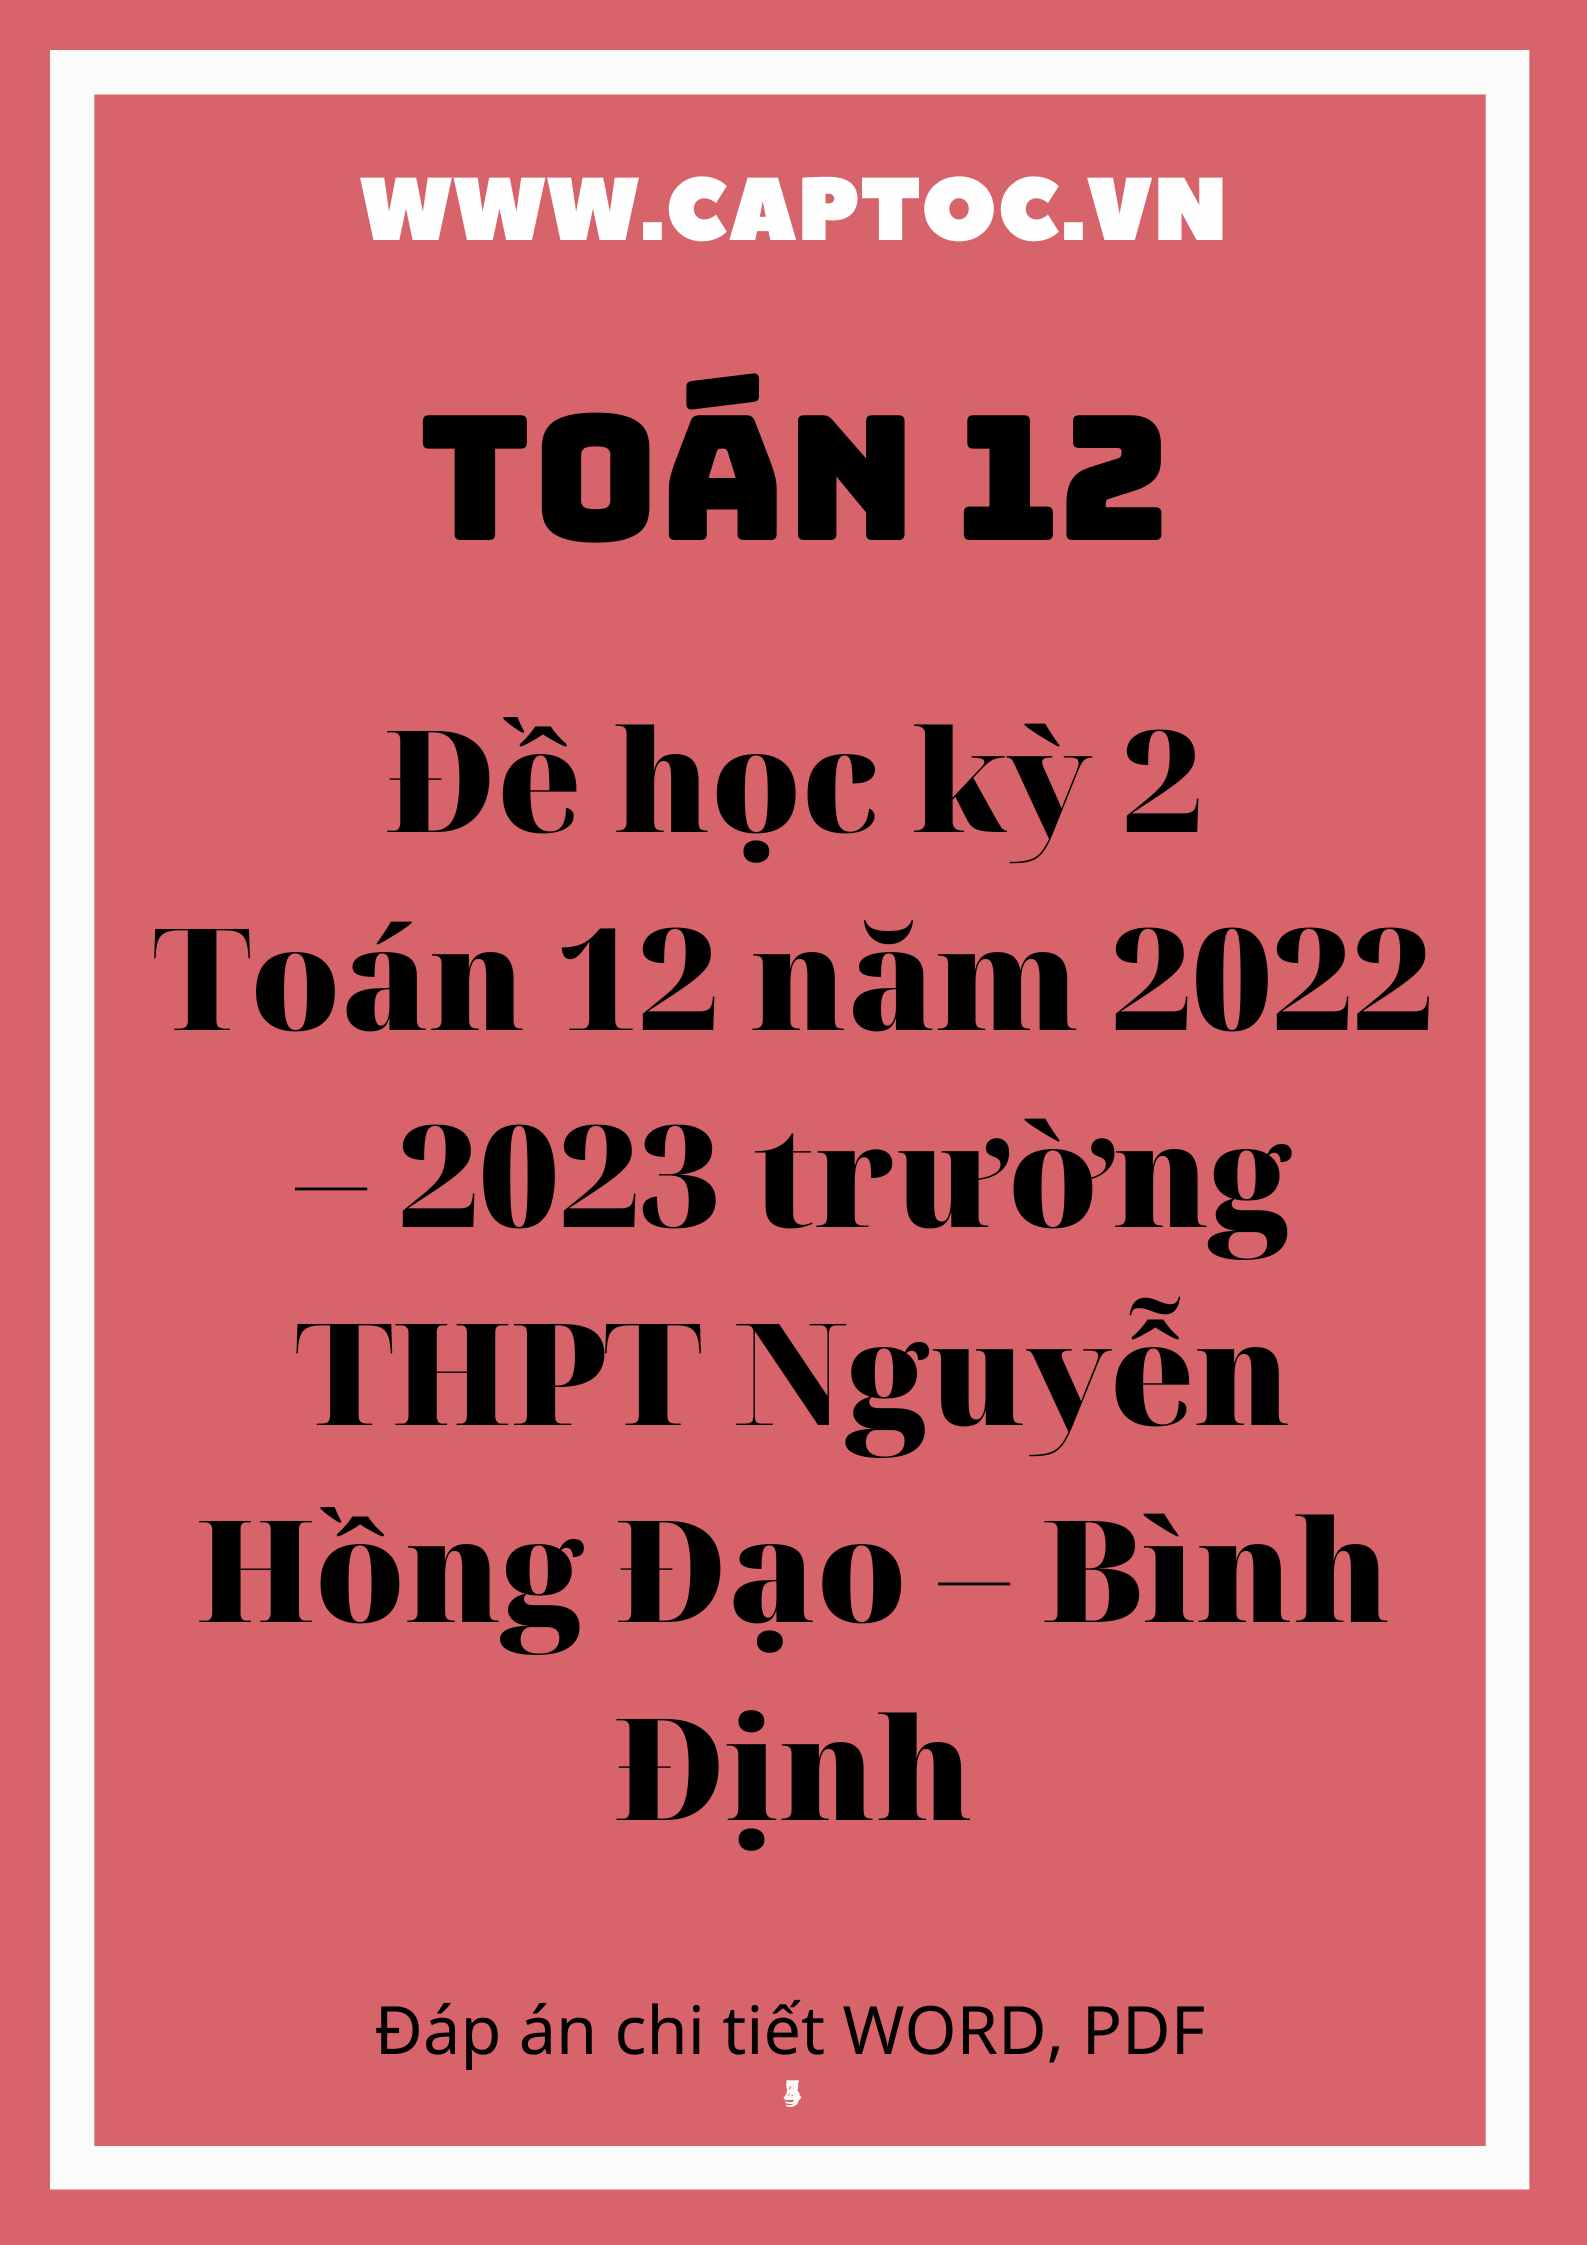 Đề học kỳ 2 Toán 12 năm 2022 – 2023 trường THPT Nguyễn Hồng Đạo – Bình Định